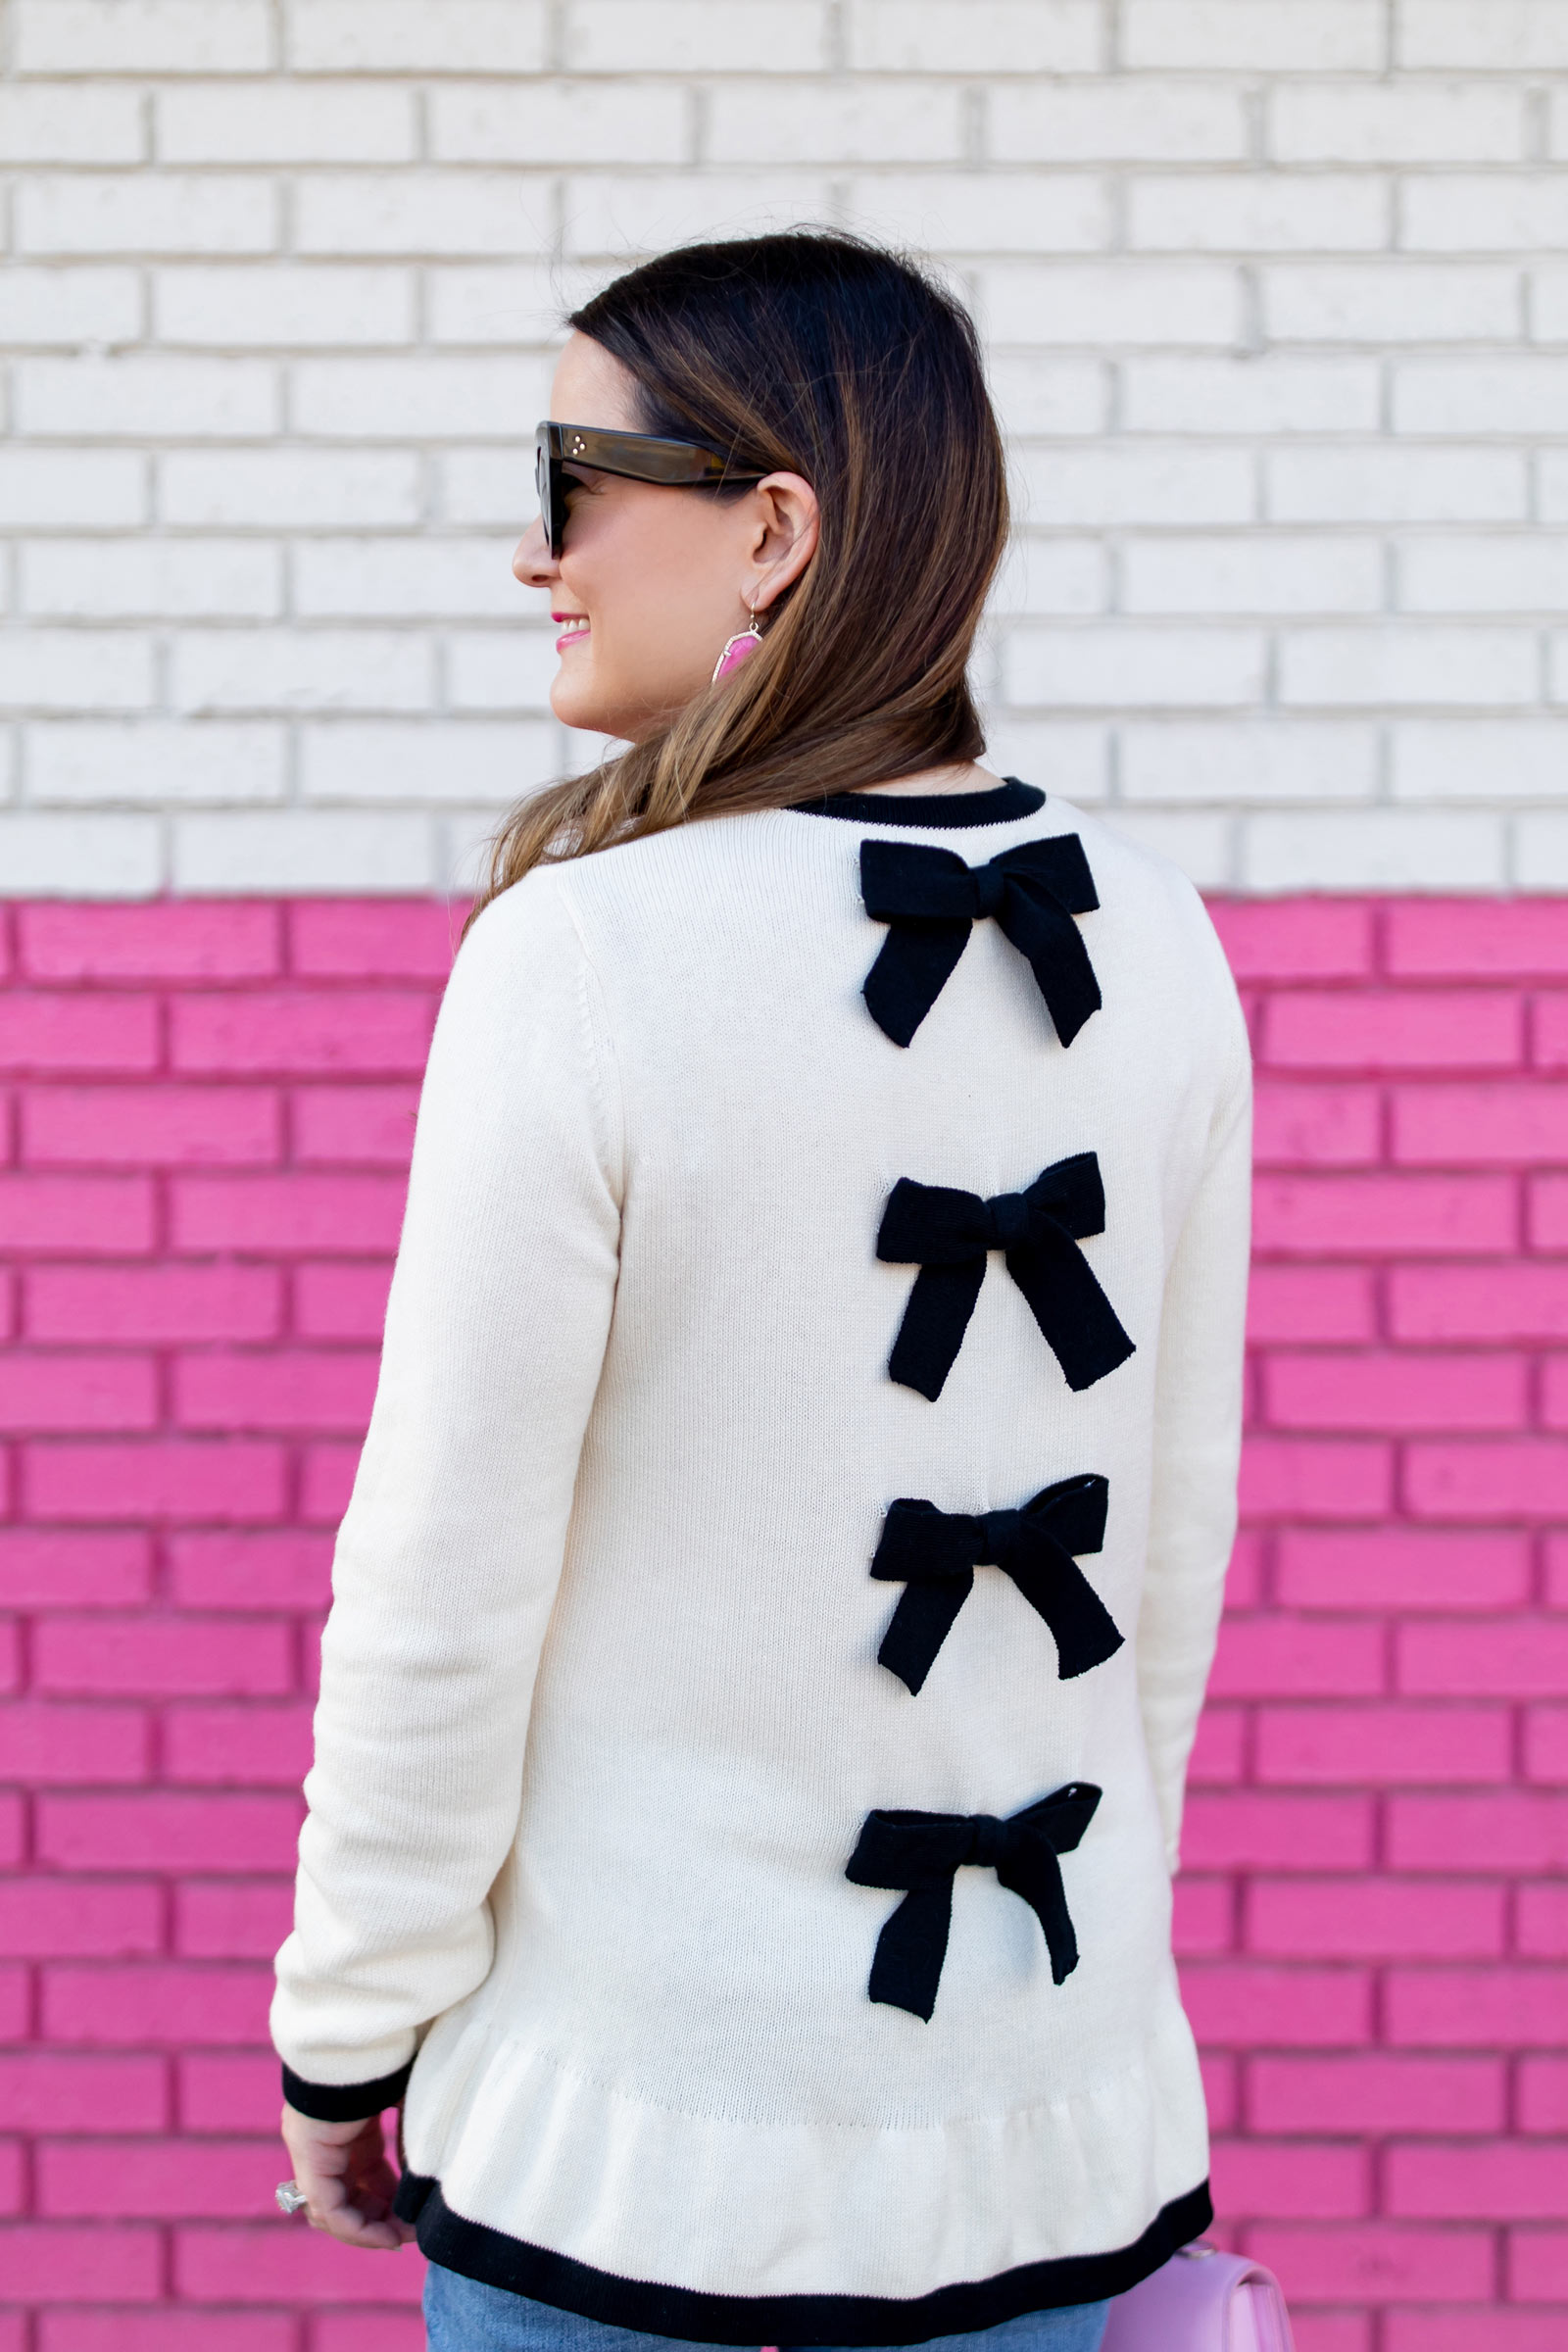 Jennifer Lake Style Charade Sweaters